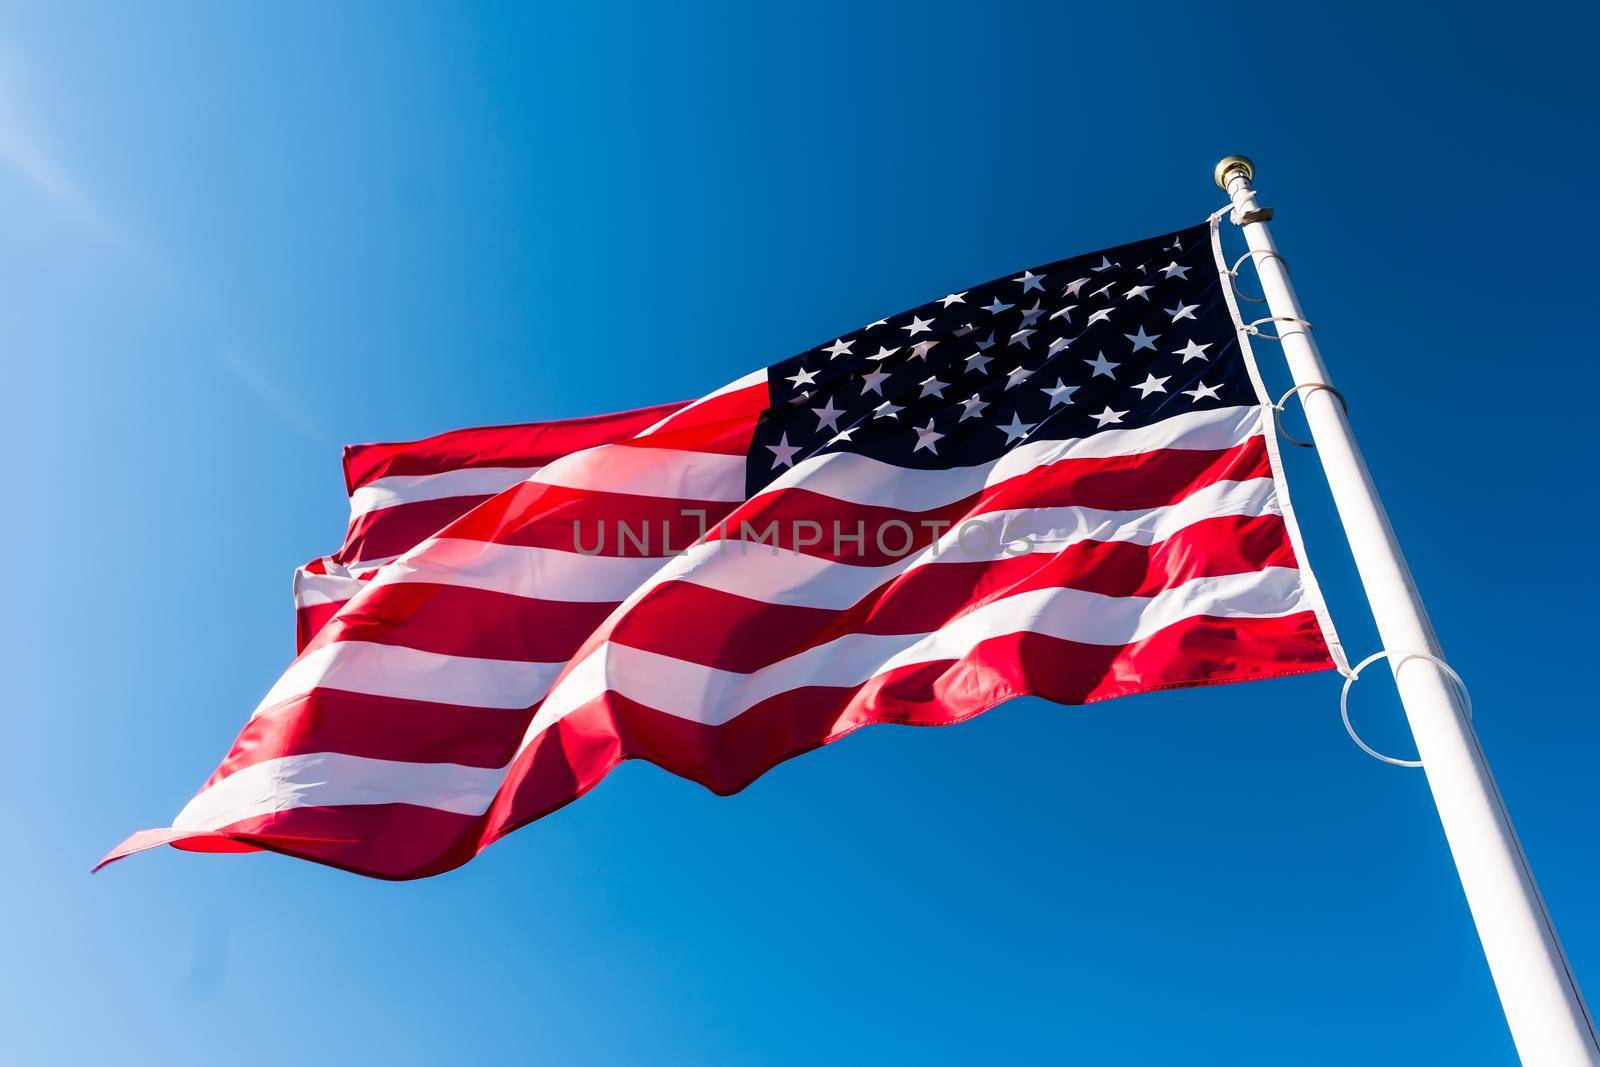 american flag in the sky by GekaSkr